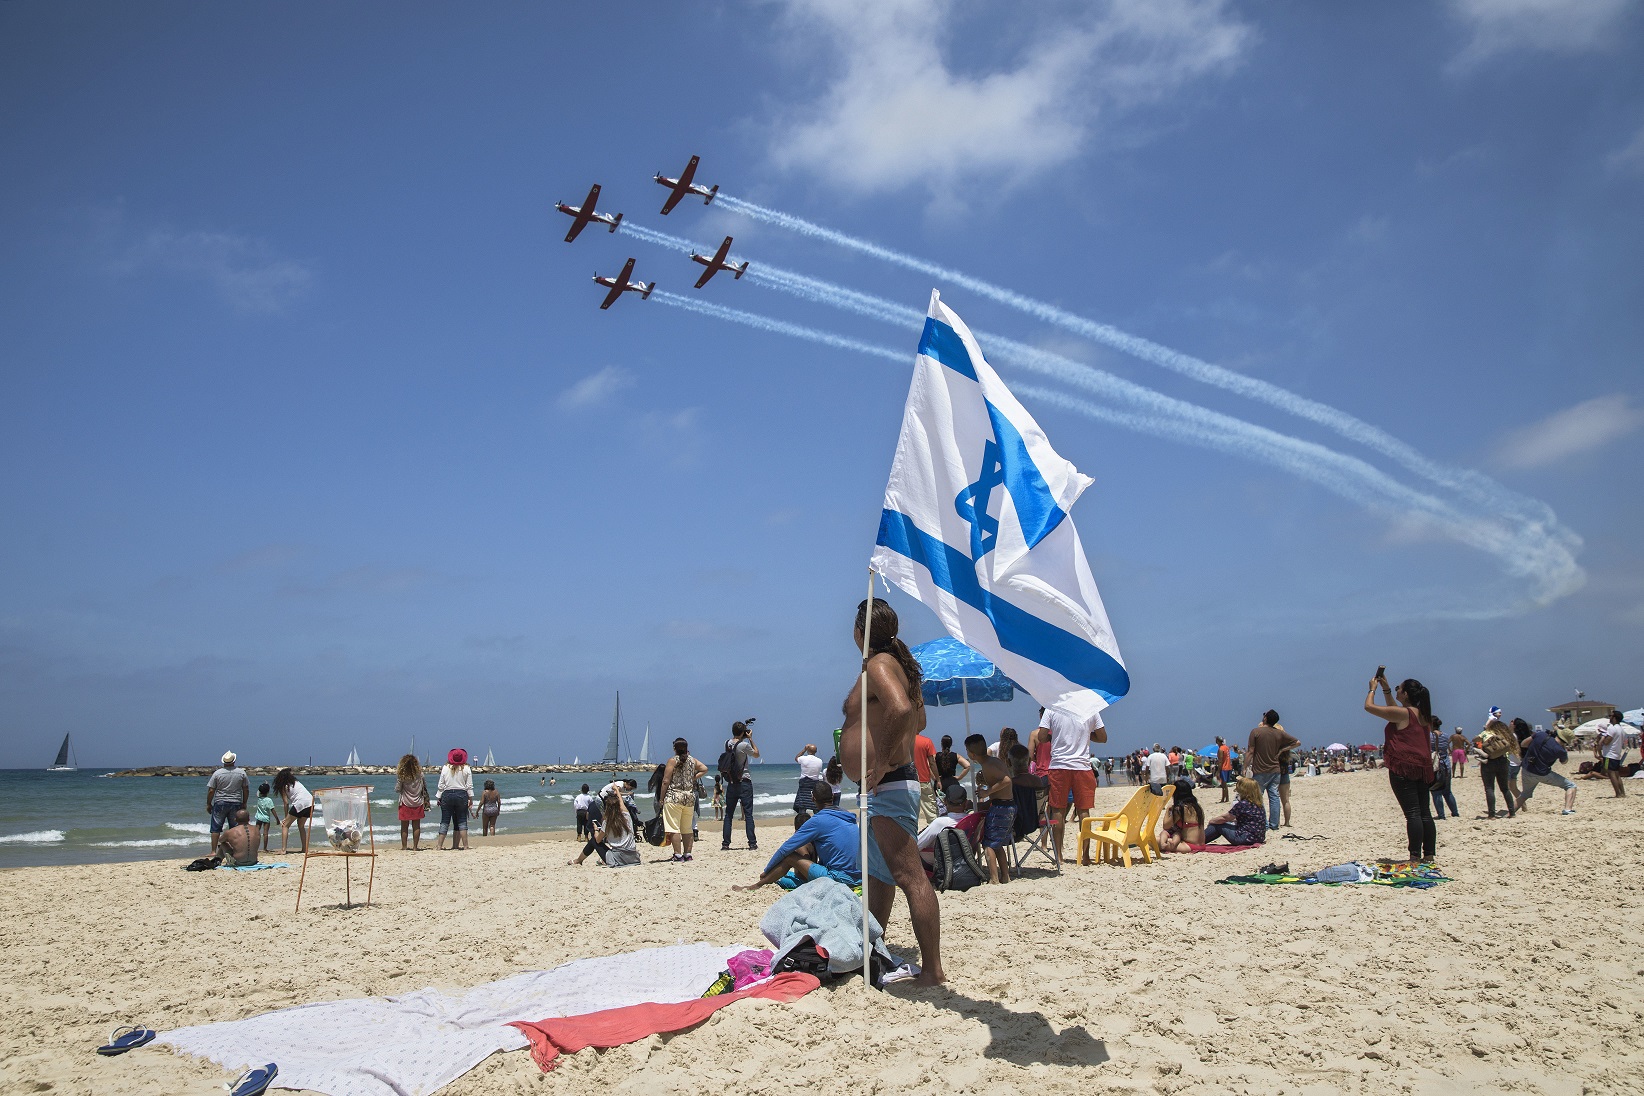 Βίντεο: Εντυπωσιακό air show σε παραλία του Τελ Αβίβ για τα 70 χρόνια ανεξαρτησίας του Ισραήλ